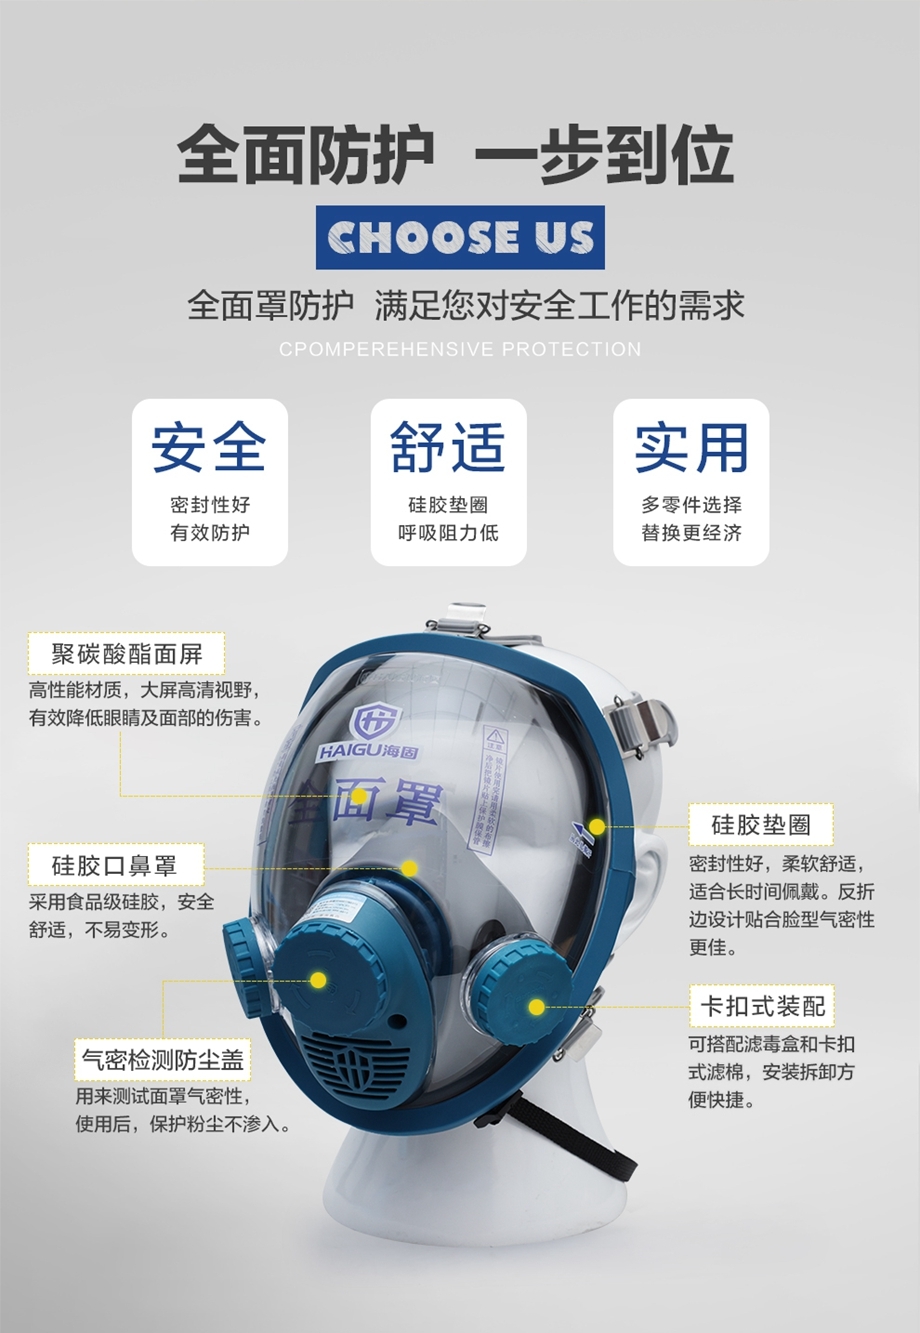 海固HG-800D自吸过滤式防毒面具全面罩 硅胶头网款